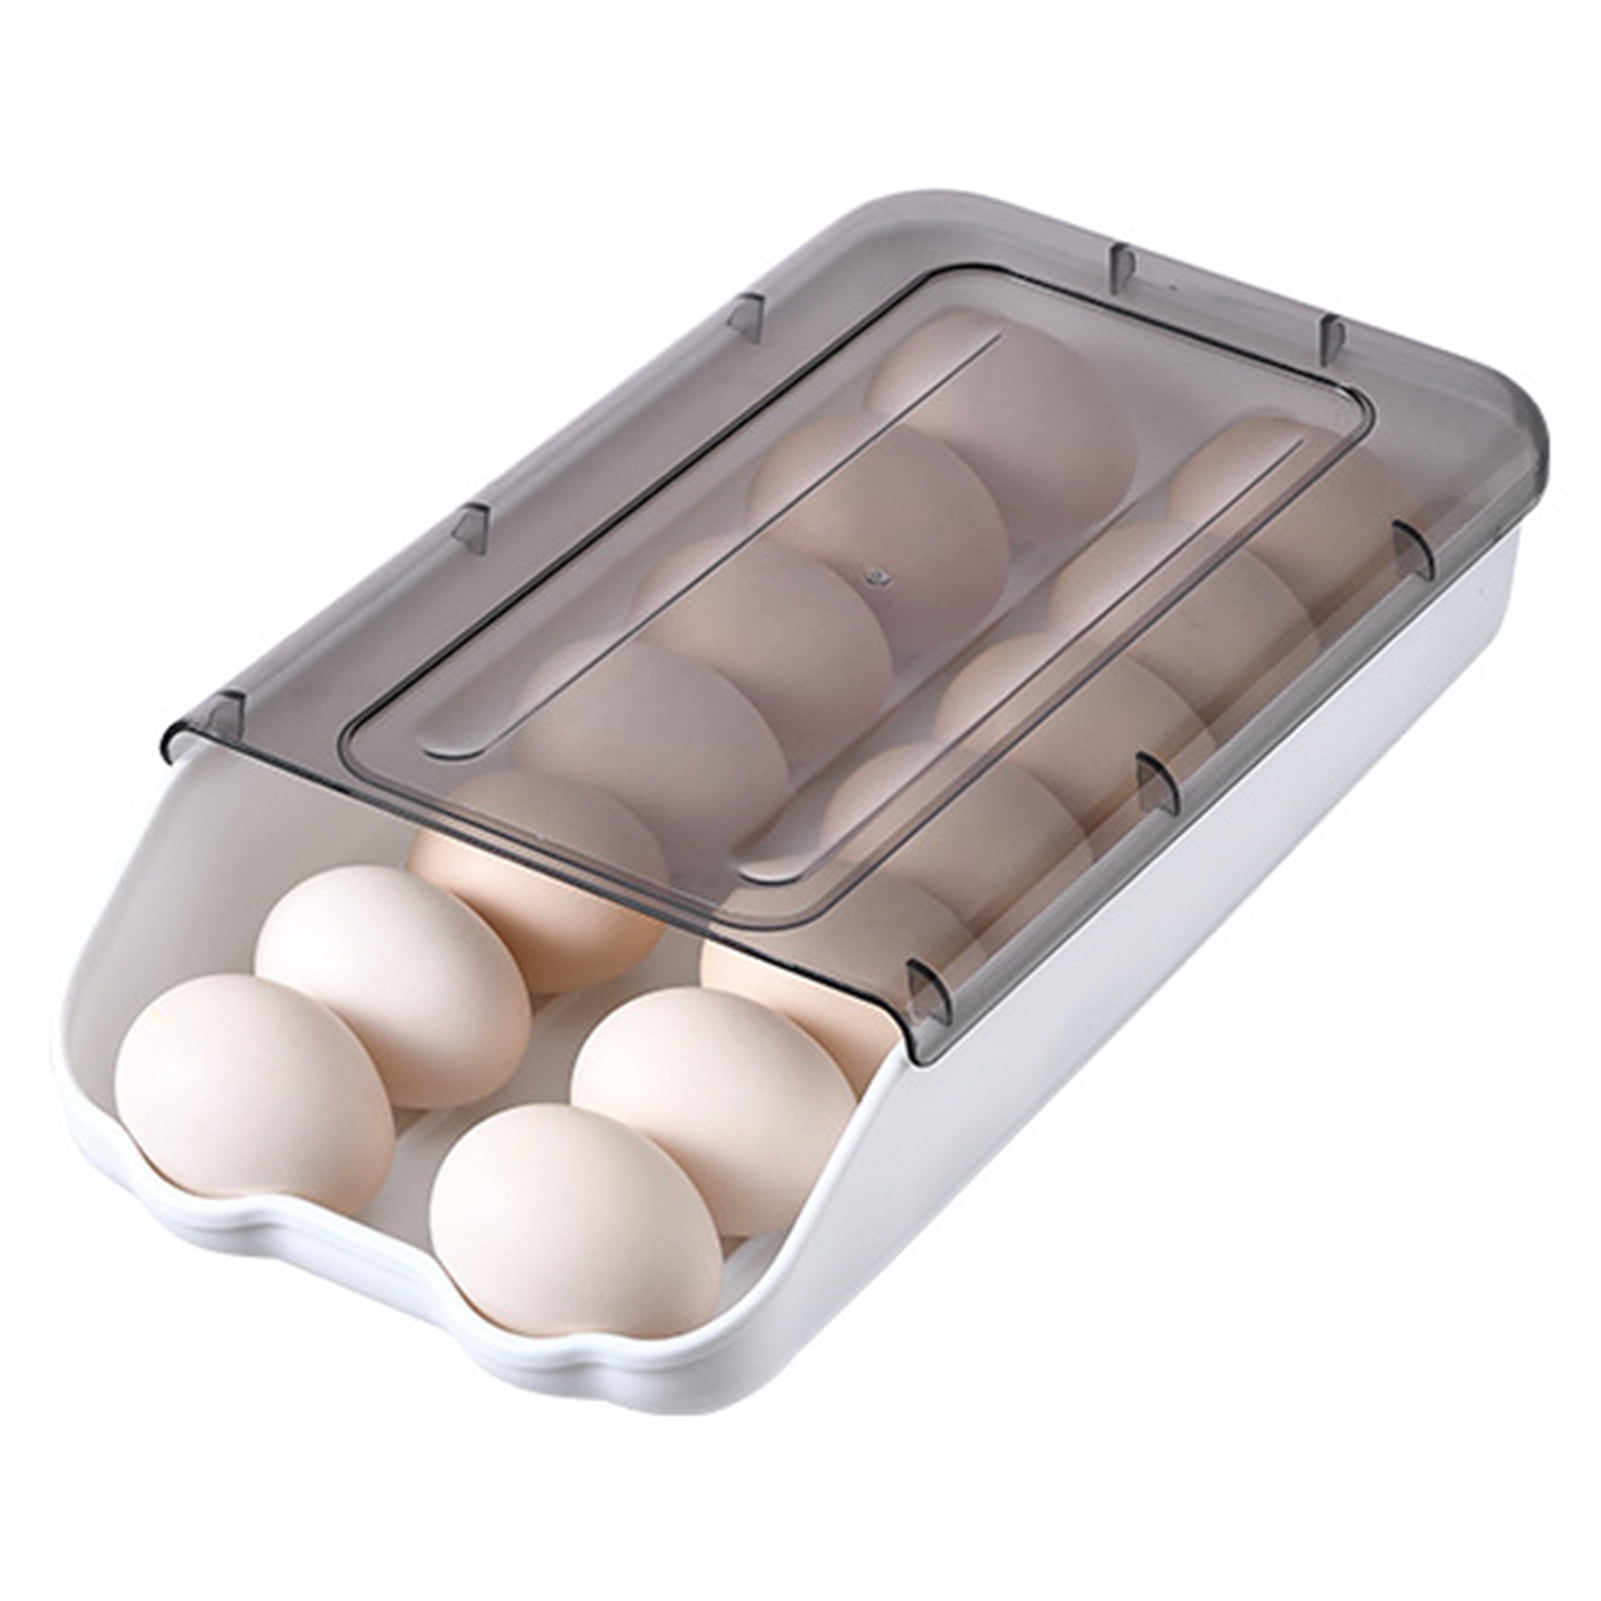 Plastic Egg Holder Storage Kitchen Stand Rack Holds Egg Potato Rack Storage GA 